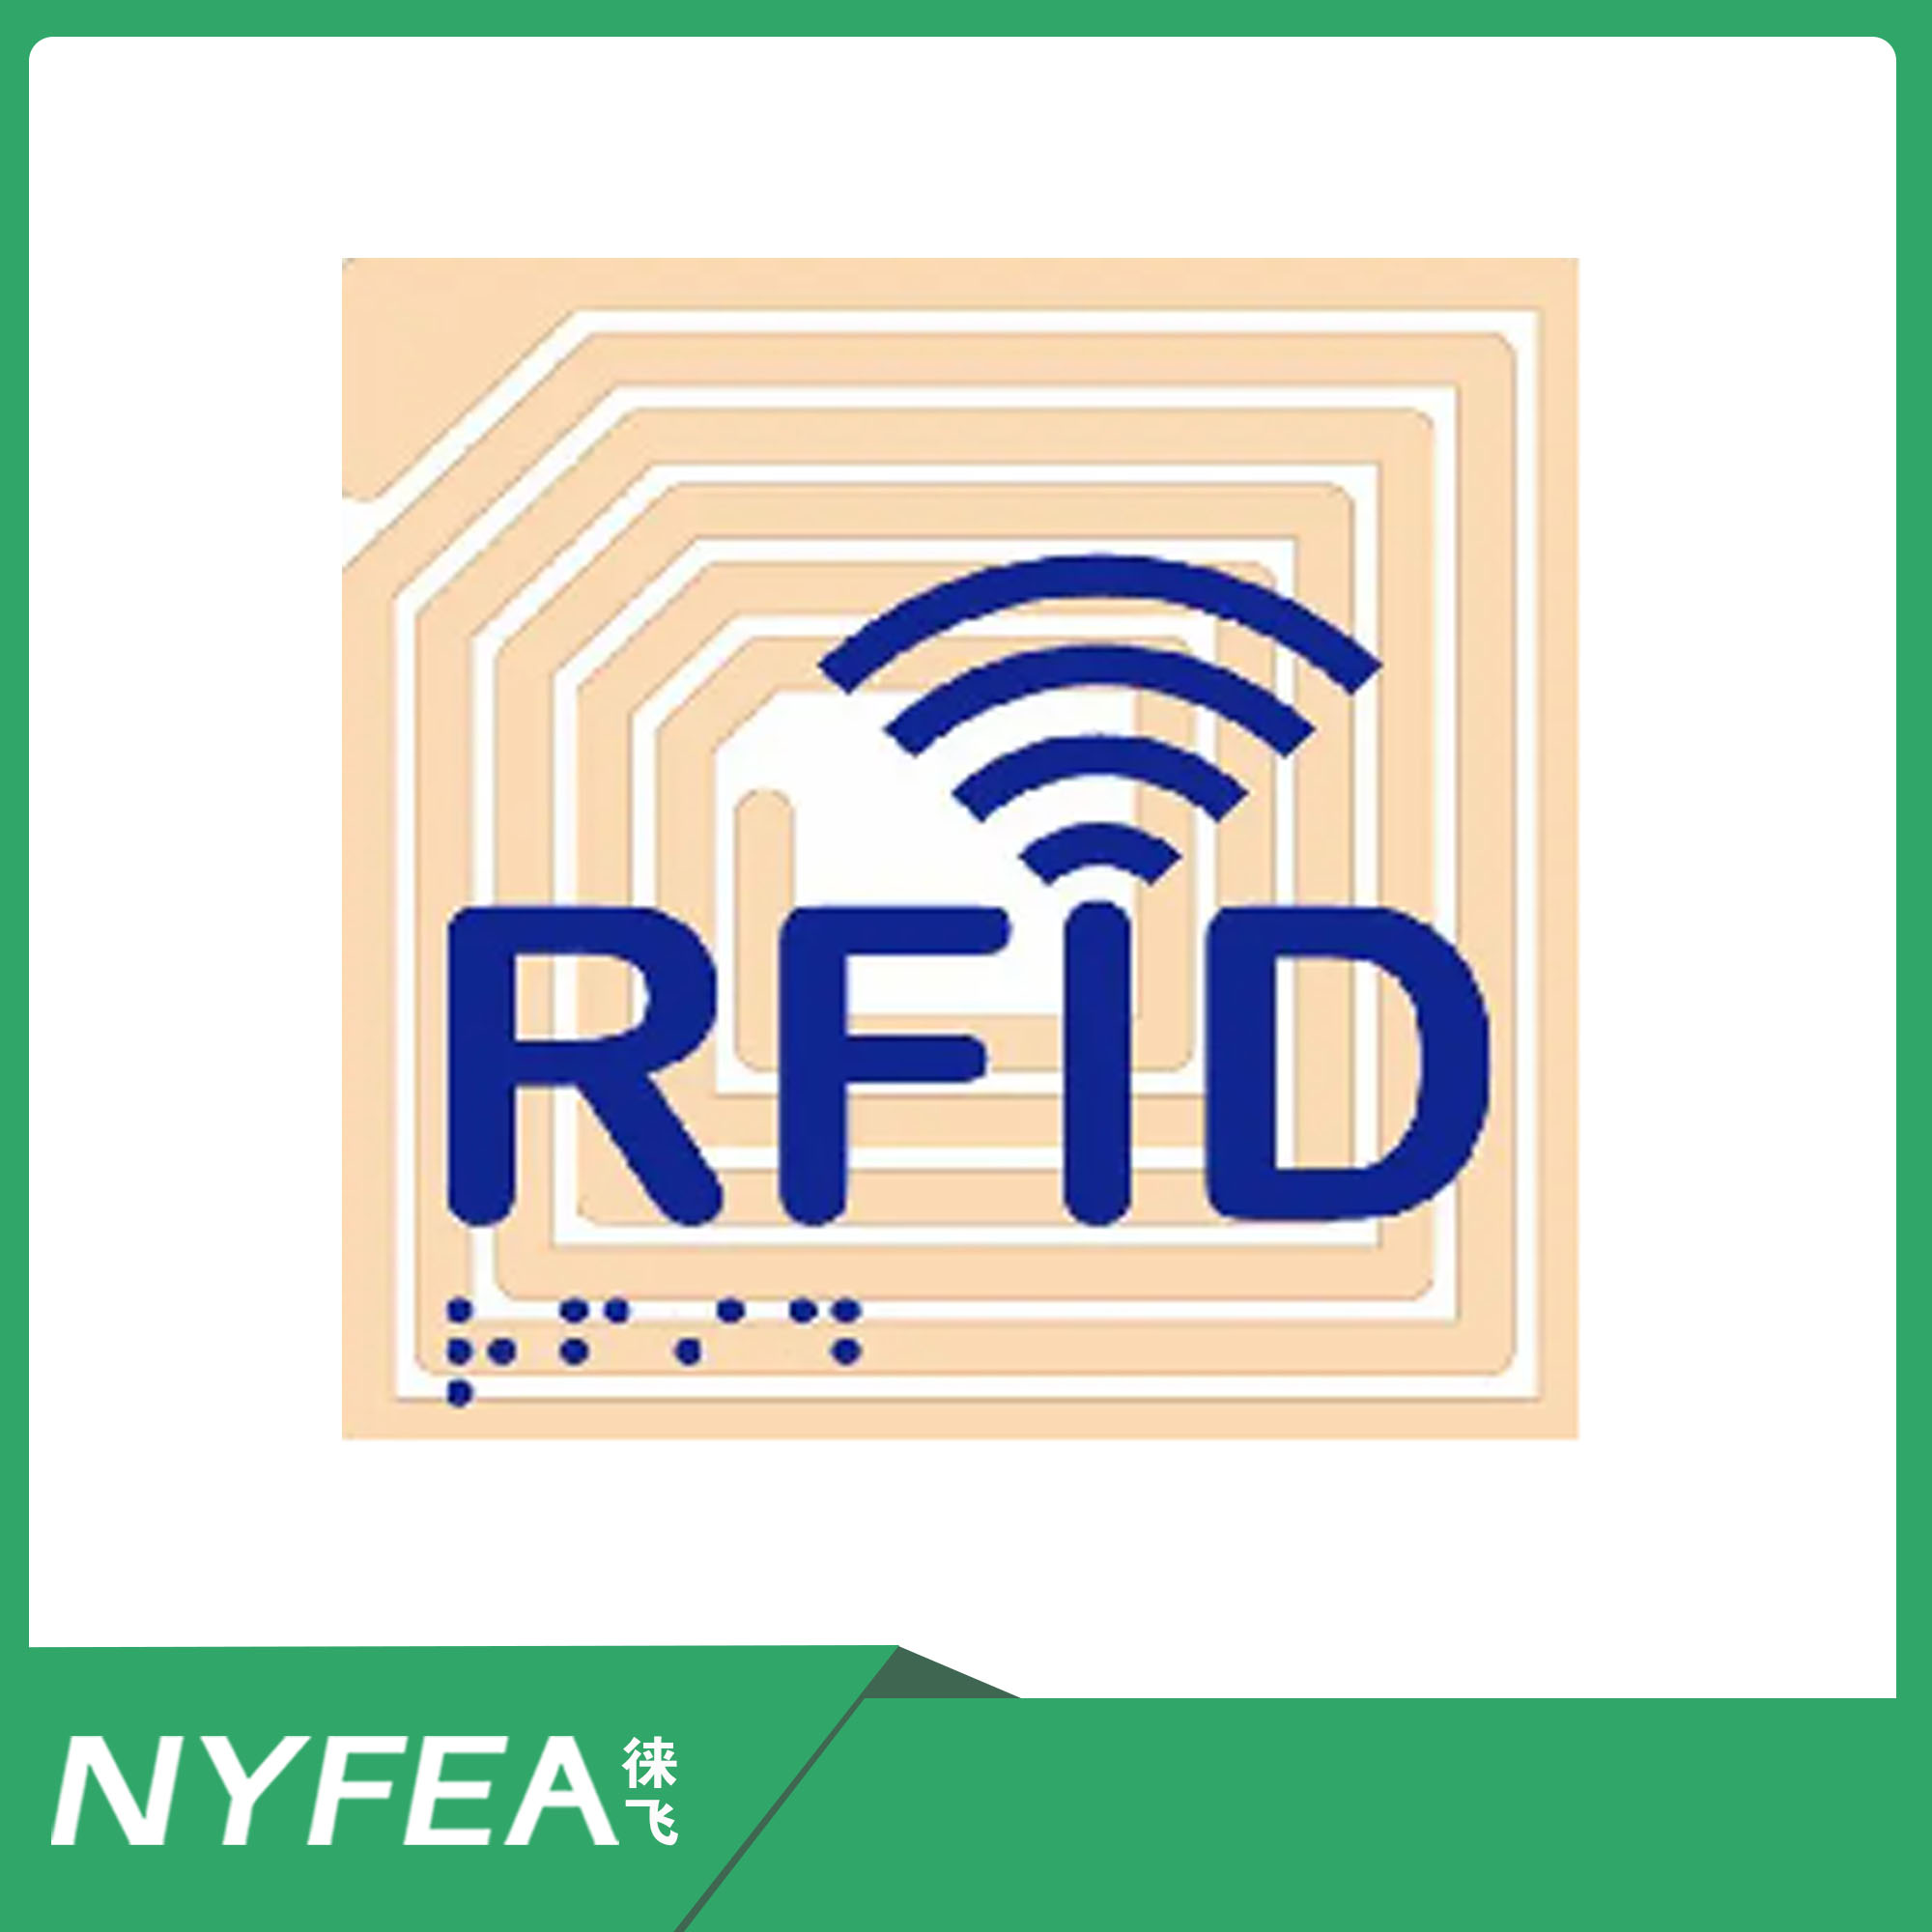 一文浅谈射频识别RFID